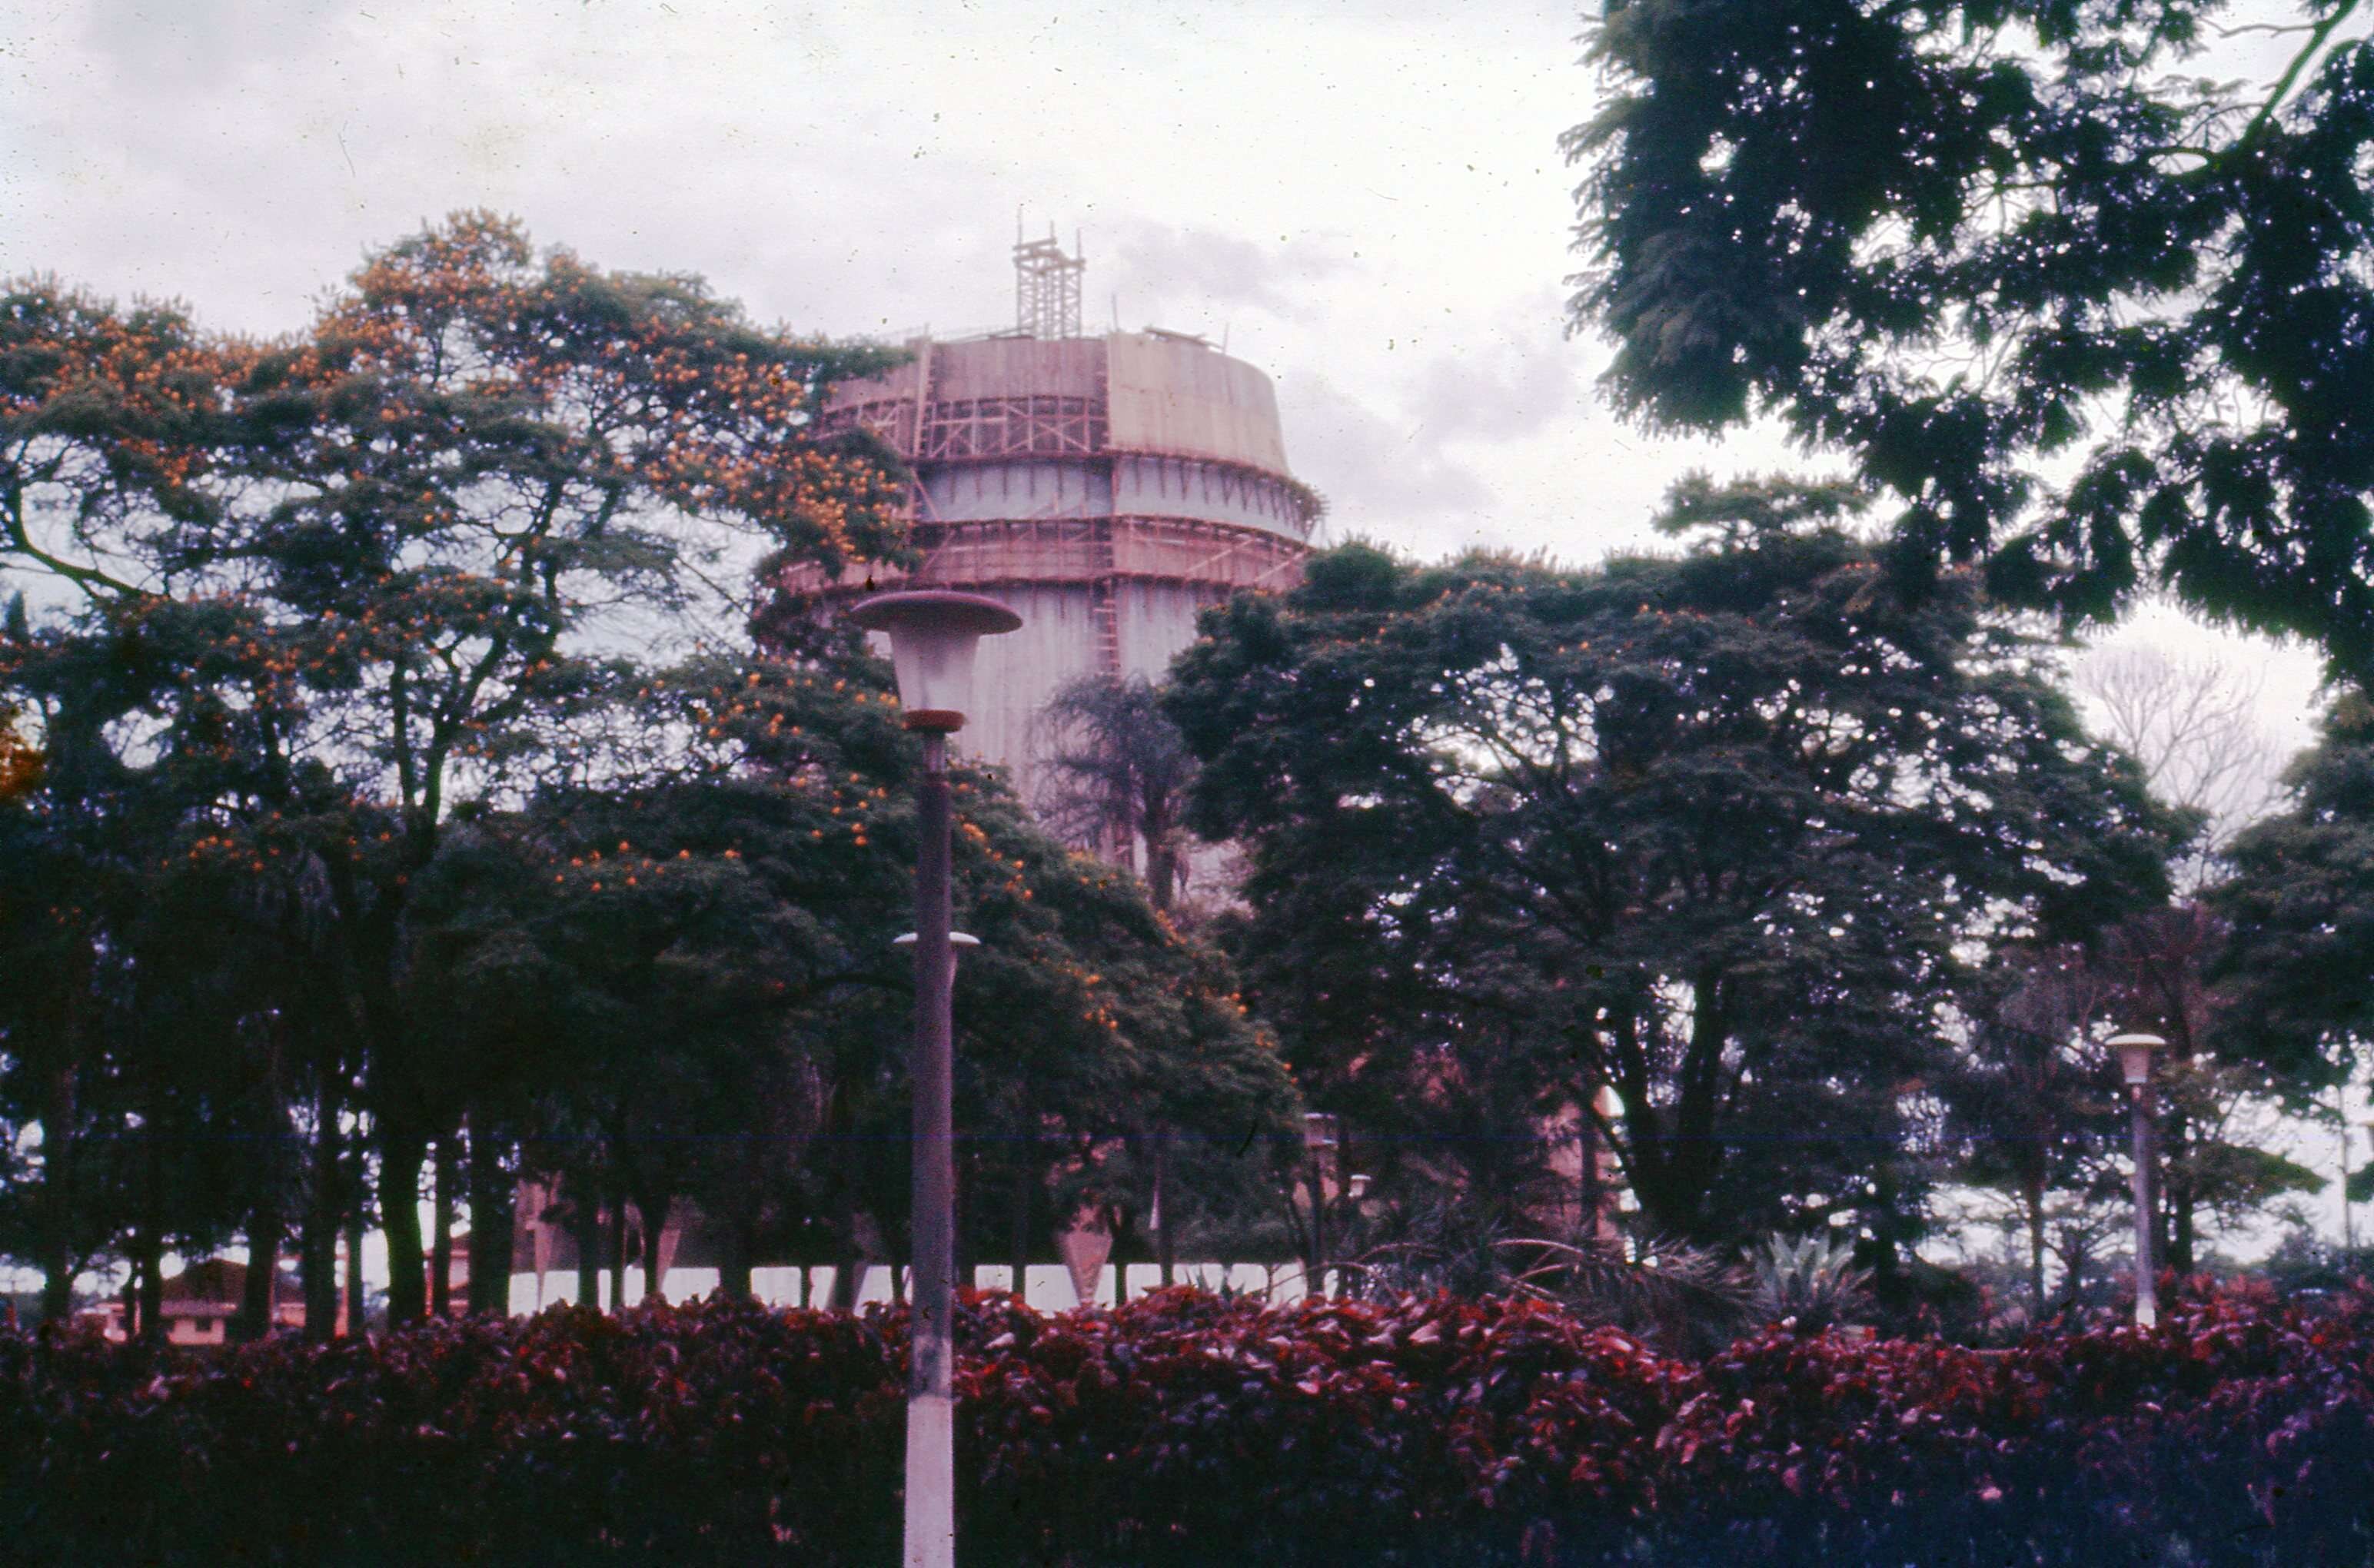 Catedral em construção - Início dos anos 1970